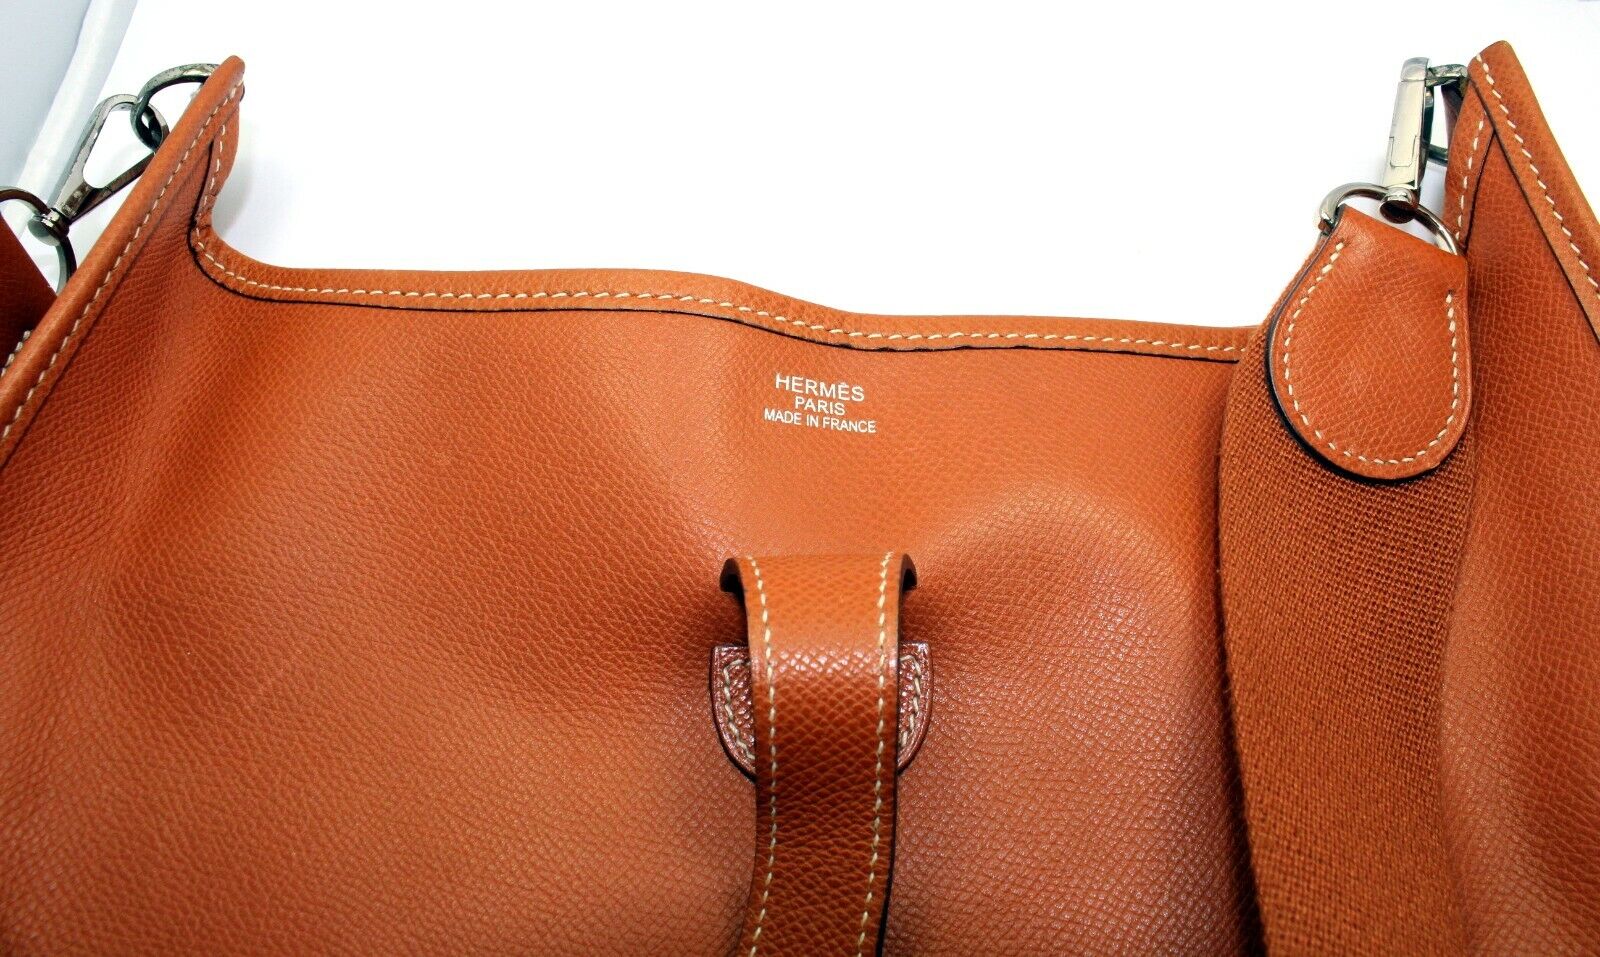 Evelyne & Co. Handbag Strap Green / Silver